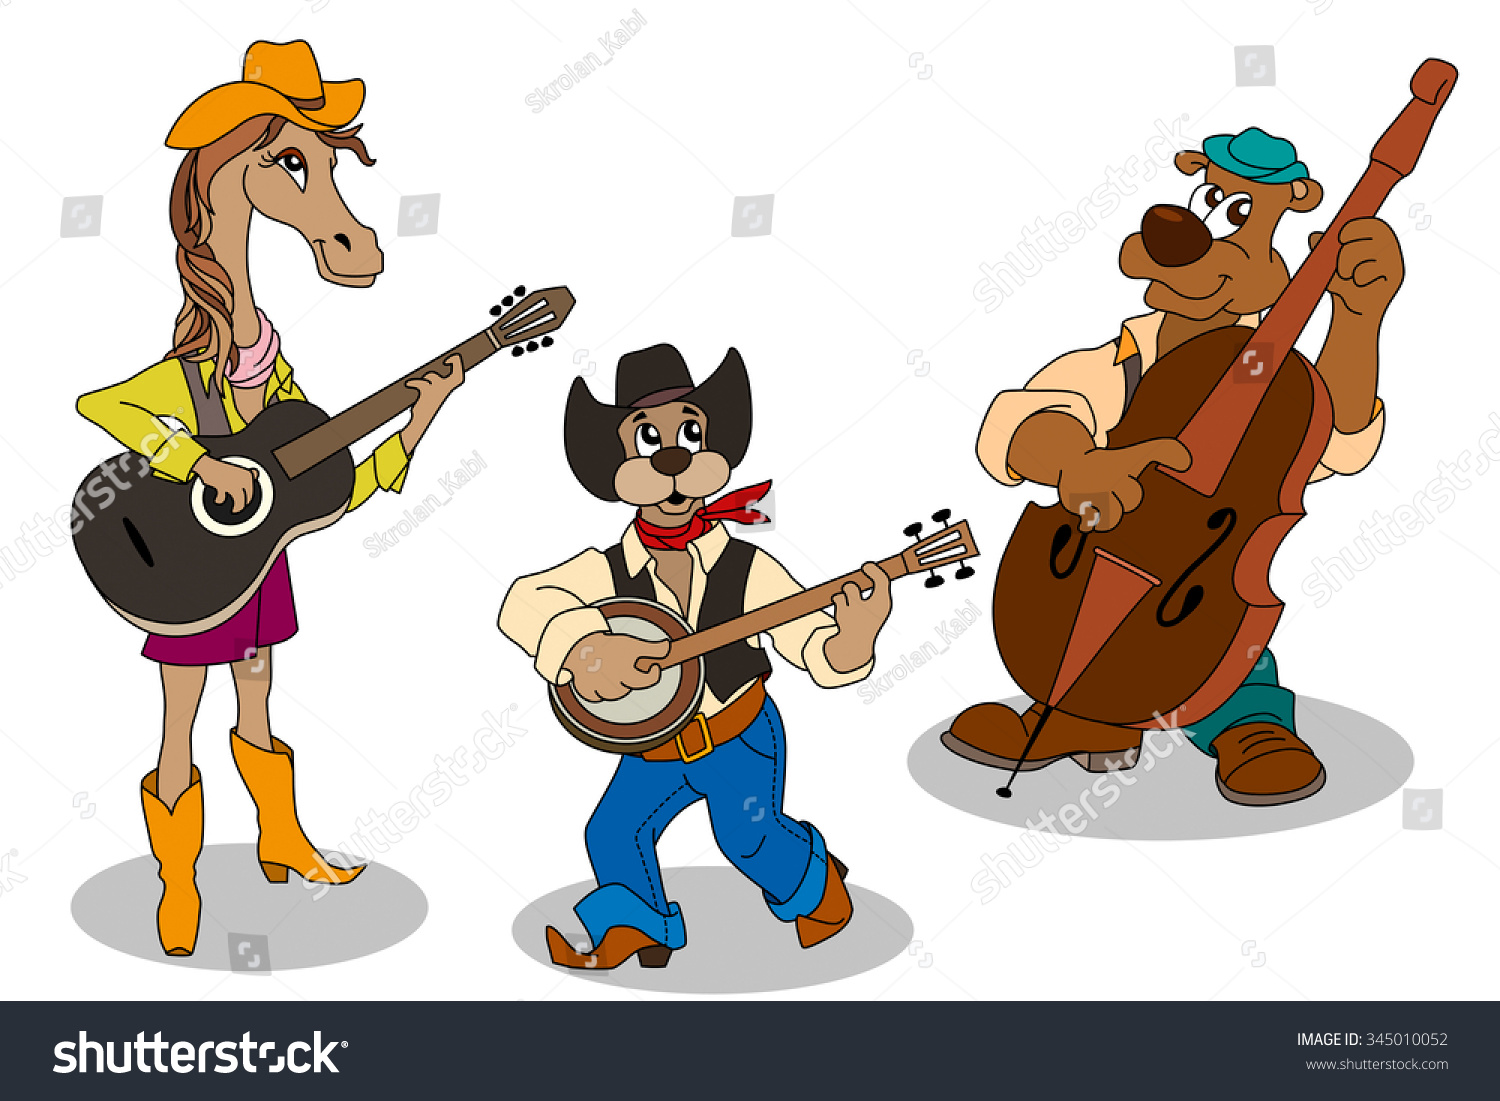 Животные играющие на музыкальных инструментах